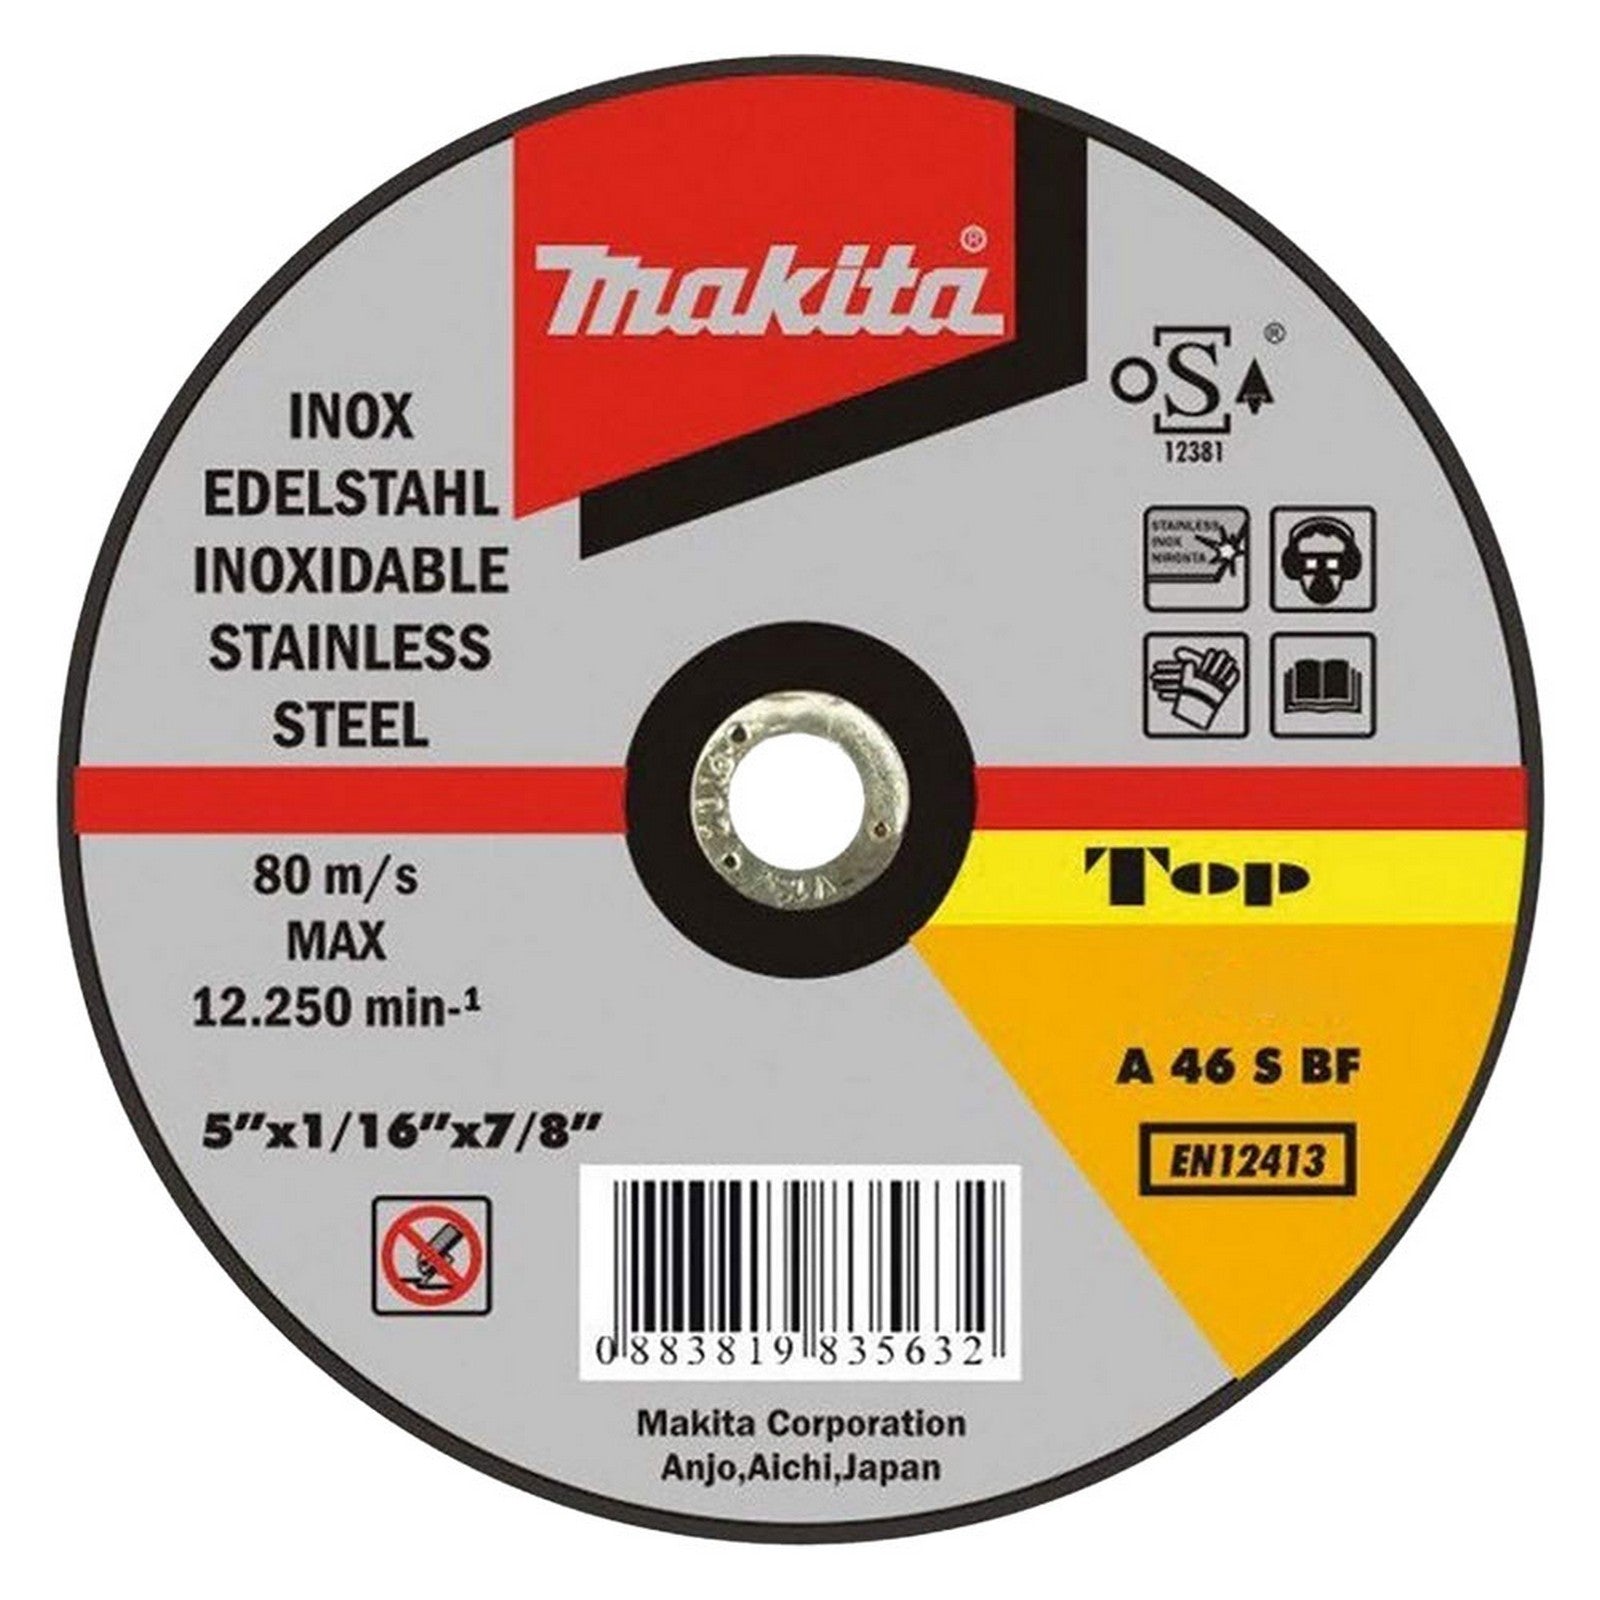 50pz dischi da taglio ultrasottili ''makita'' ø mm 115 x 1,6 cod:ferx.5011042nlm